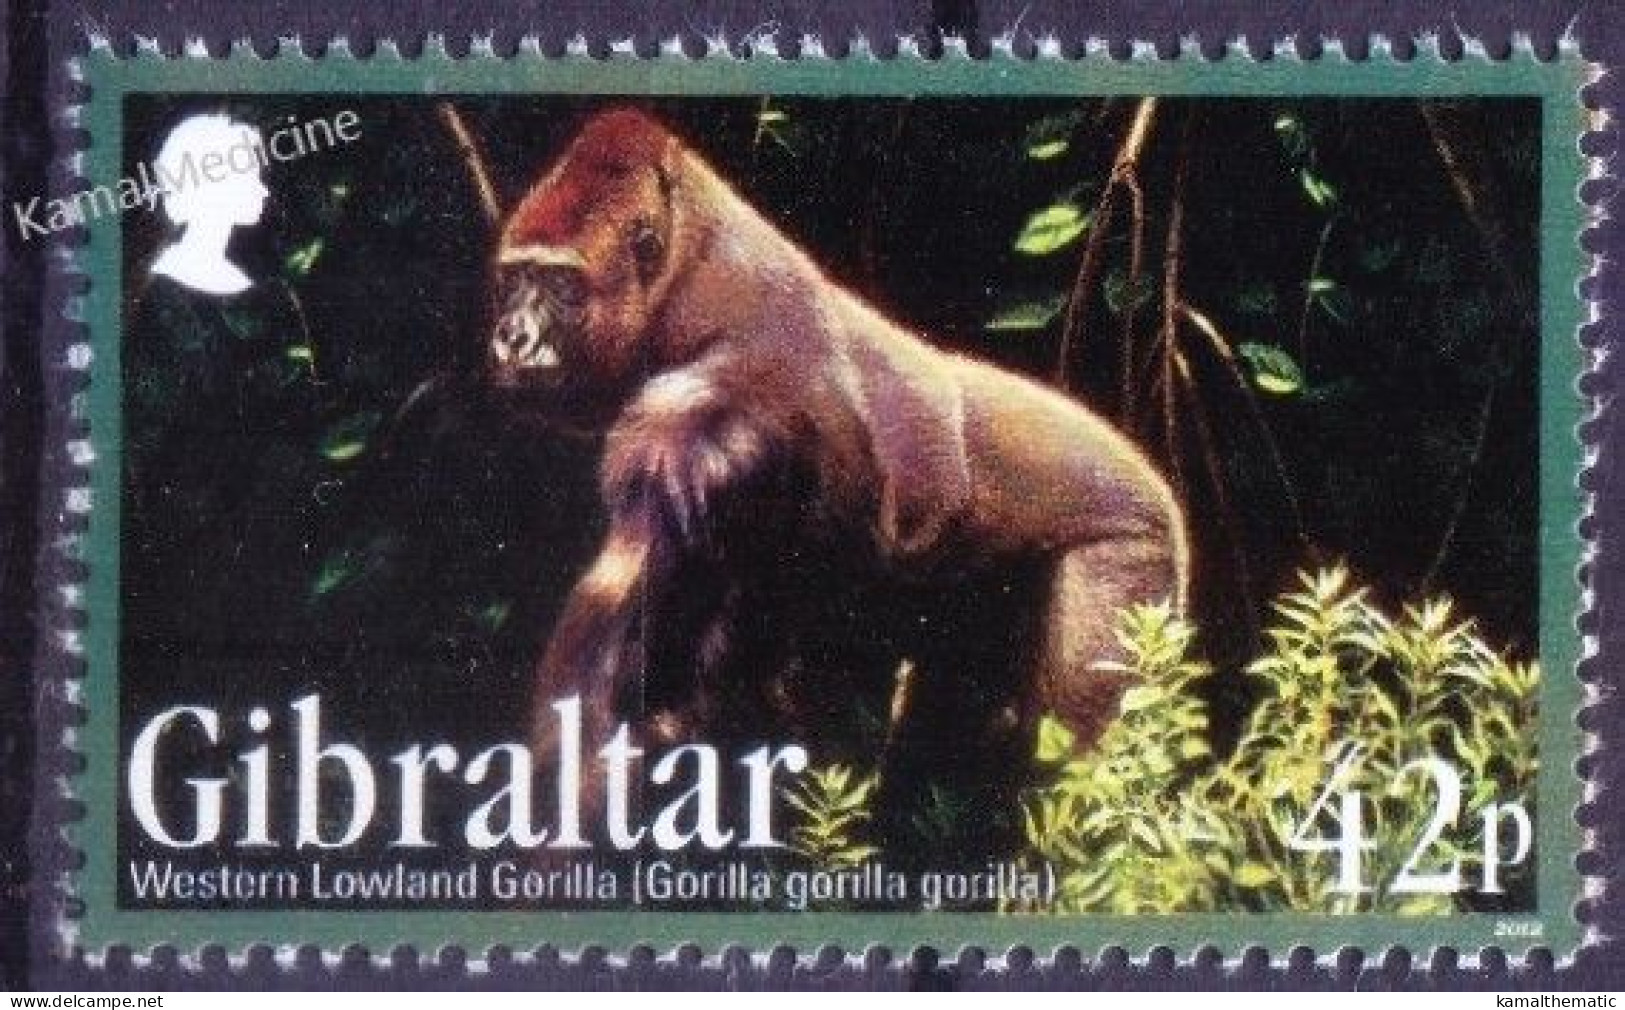 Gibraltar 2012 MNH, Western Lowland Gorilla, Monkeys Wild Animals - Gorillas